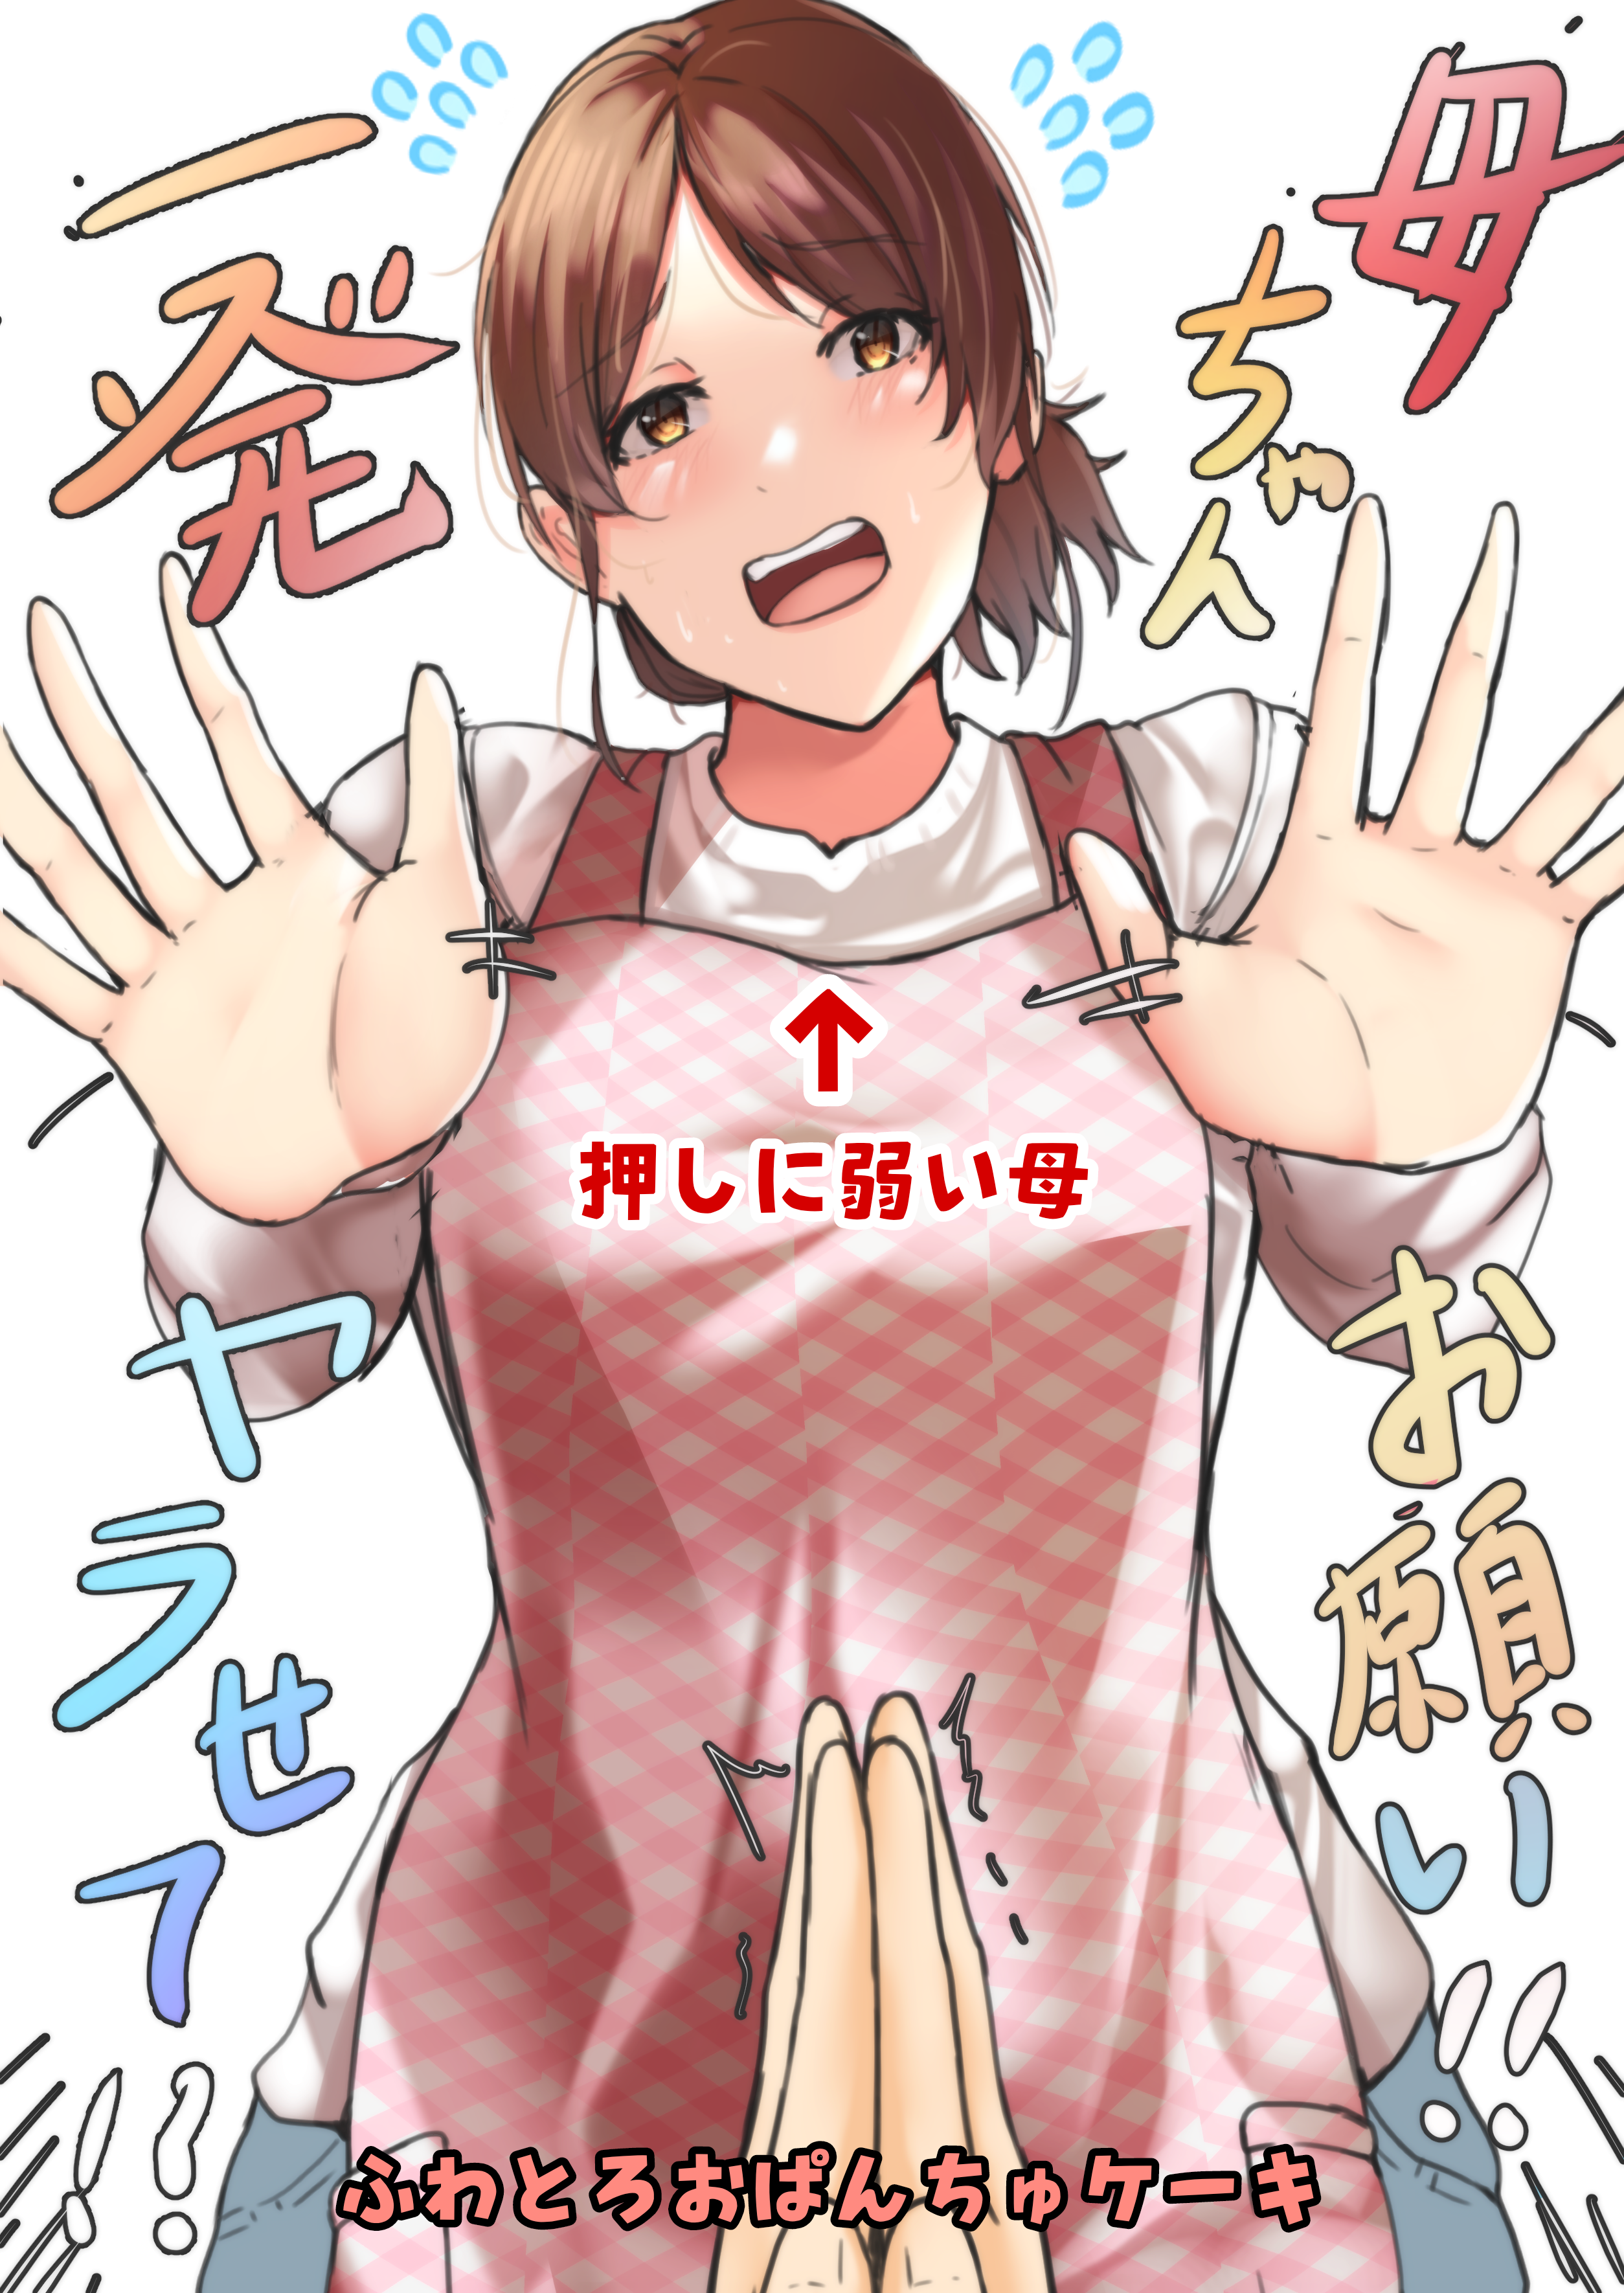 01 manga 1